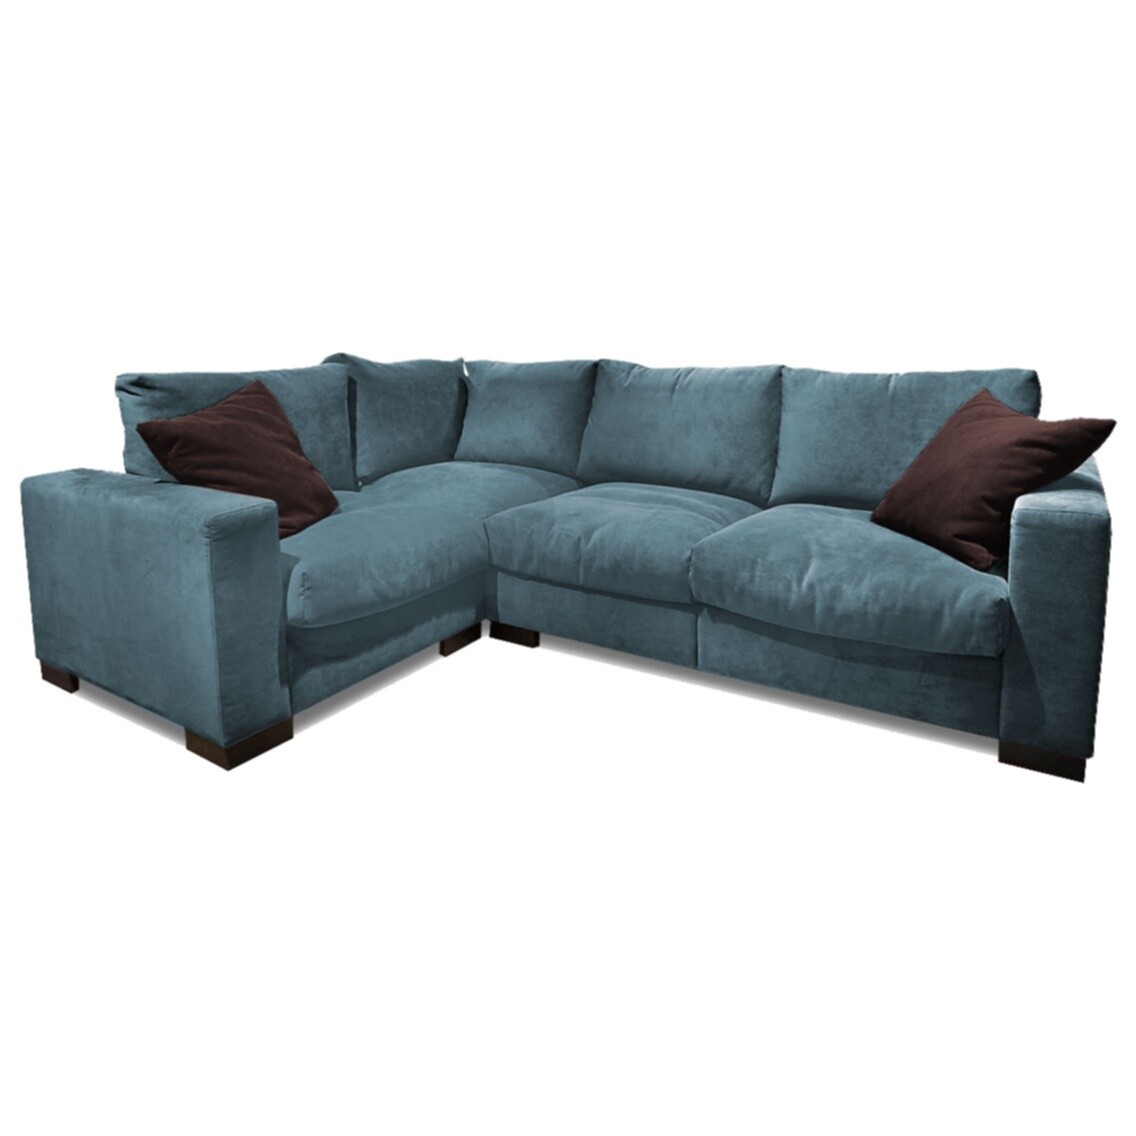 Угловой диван трехместный синий, венге Lofft-S